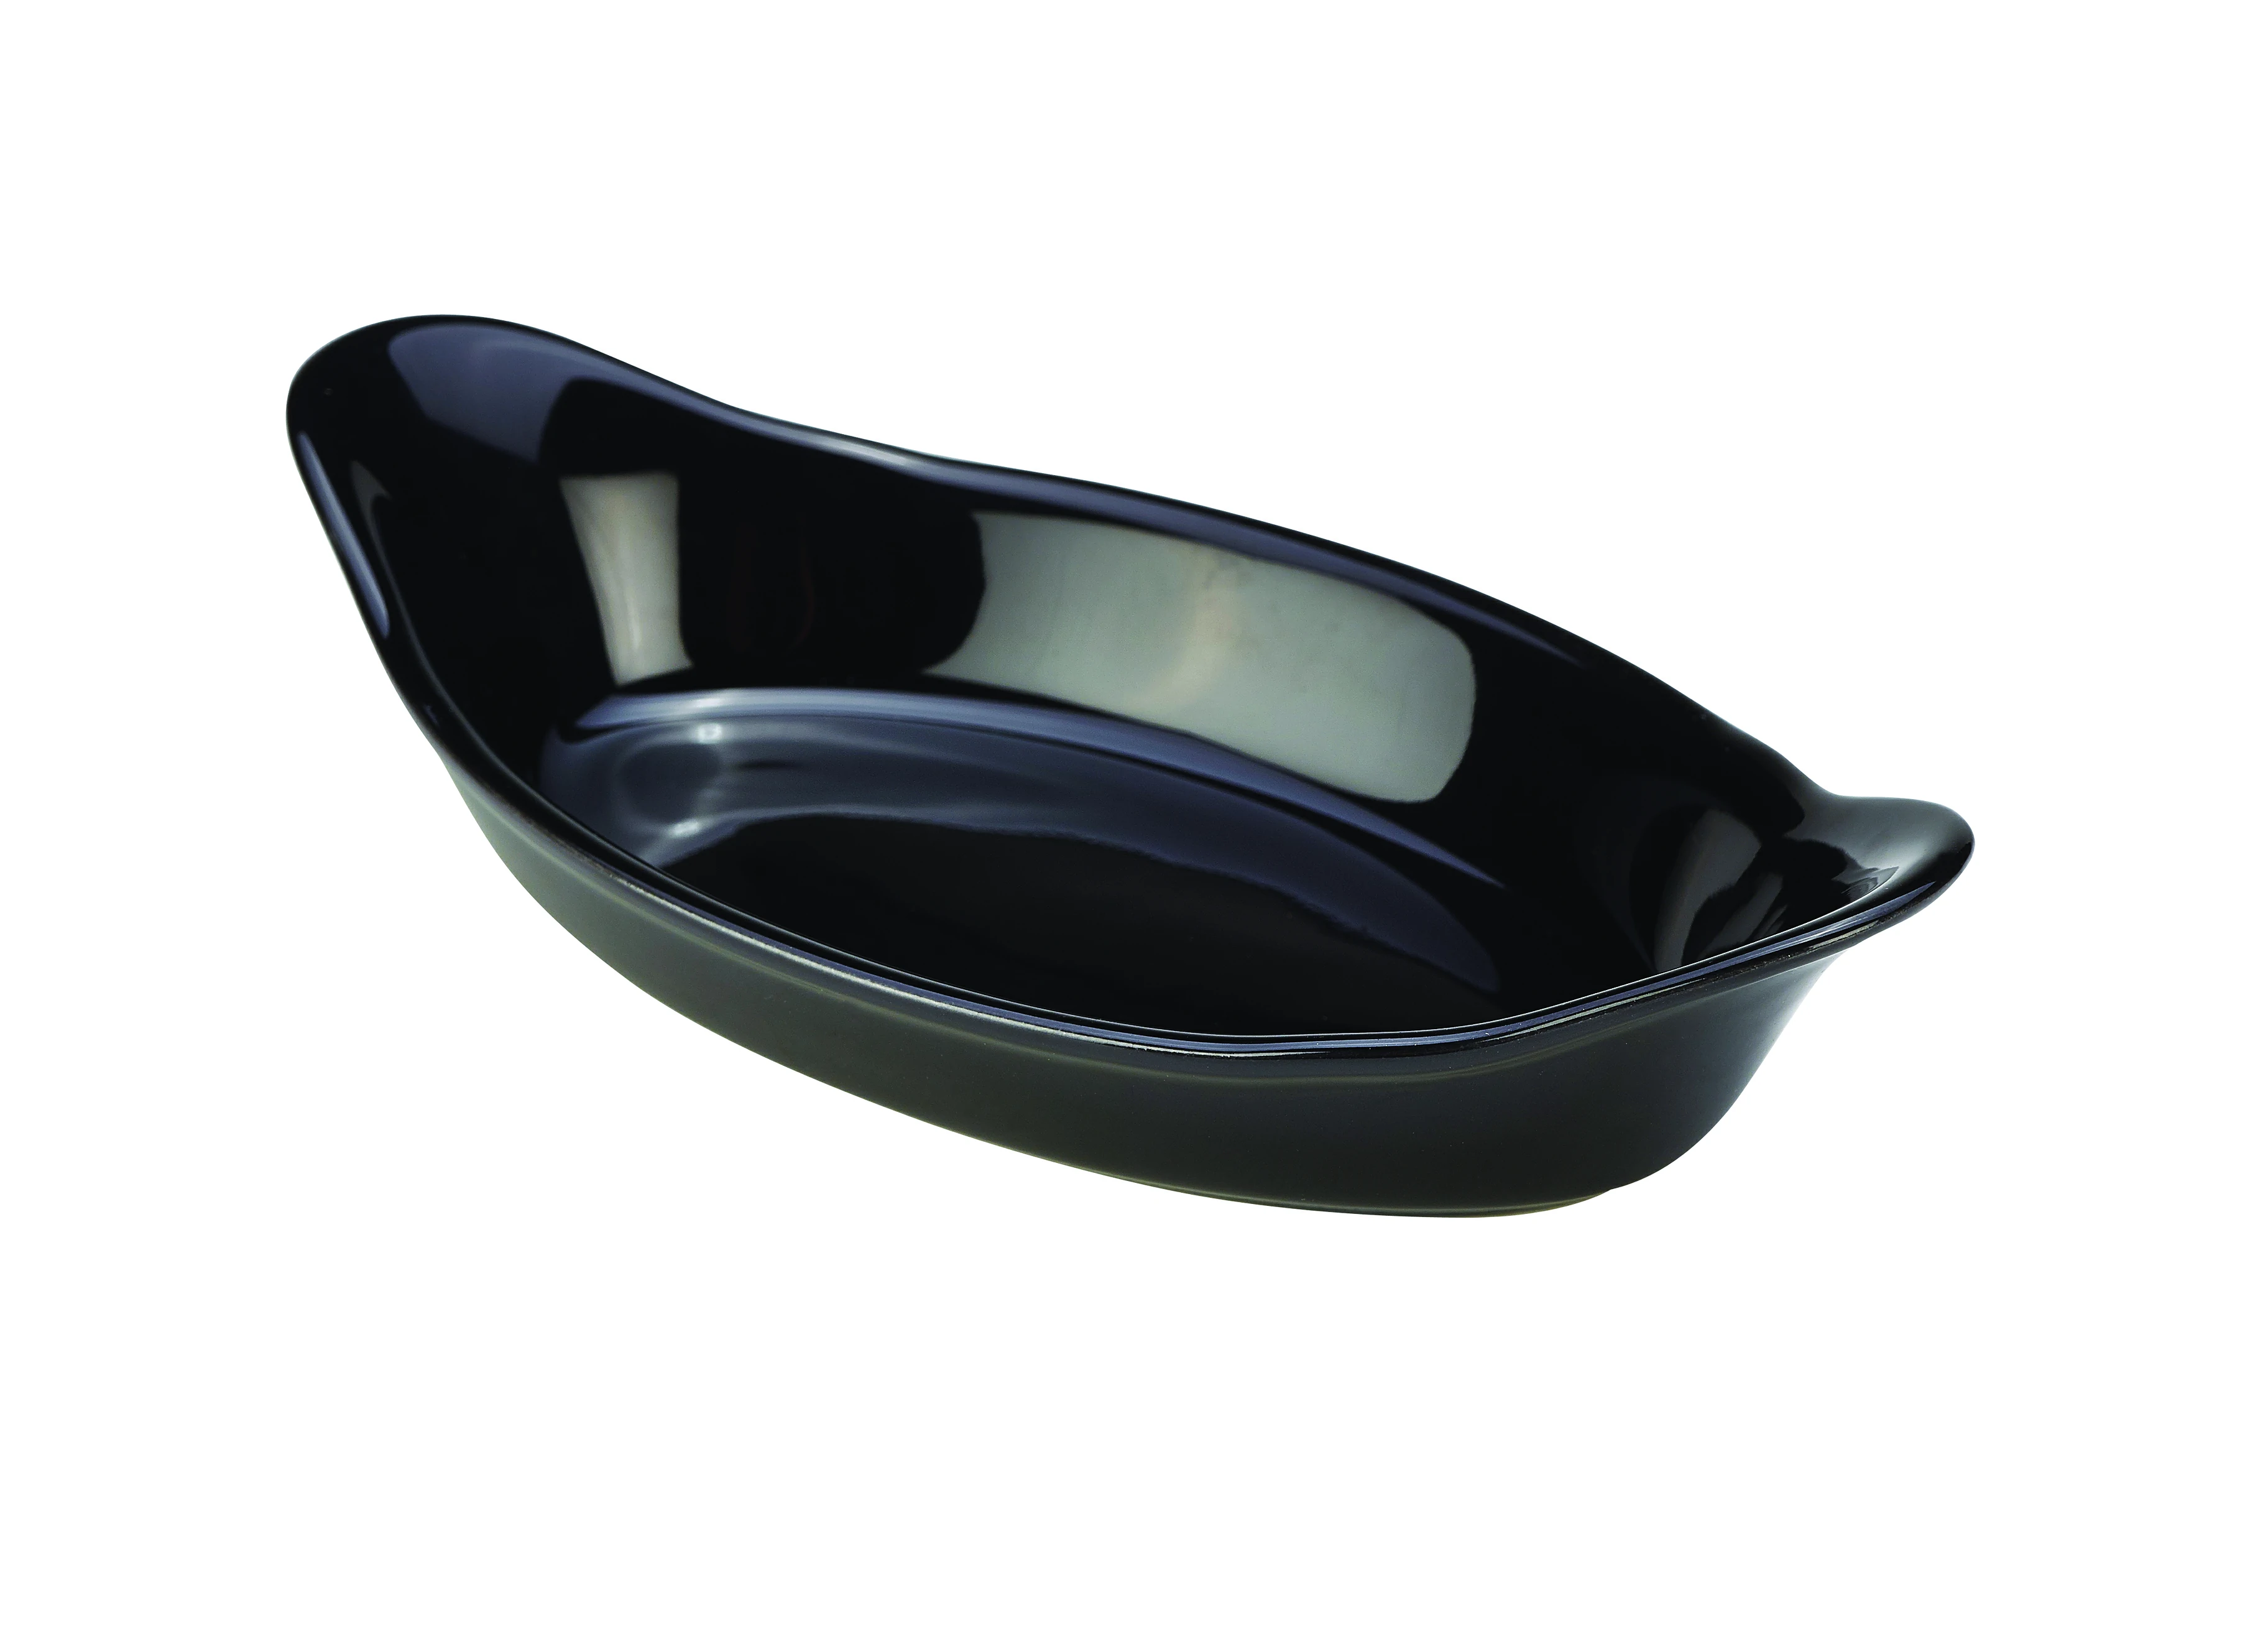 GenWare Stoneware Black Oval Eared Dish 22cm/8.5"